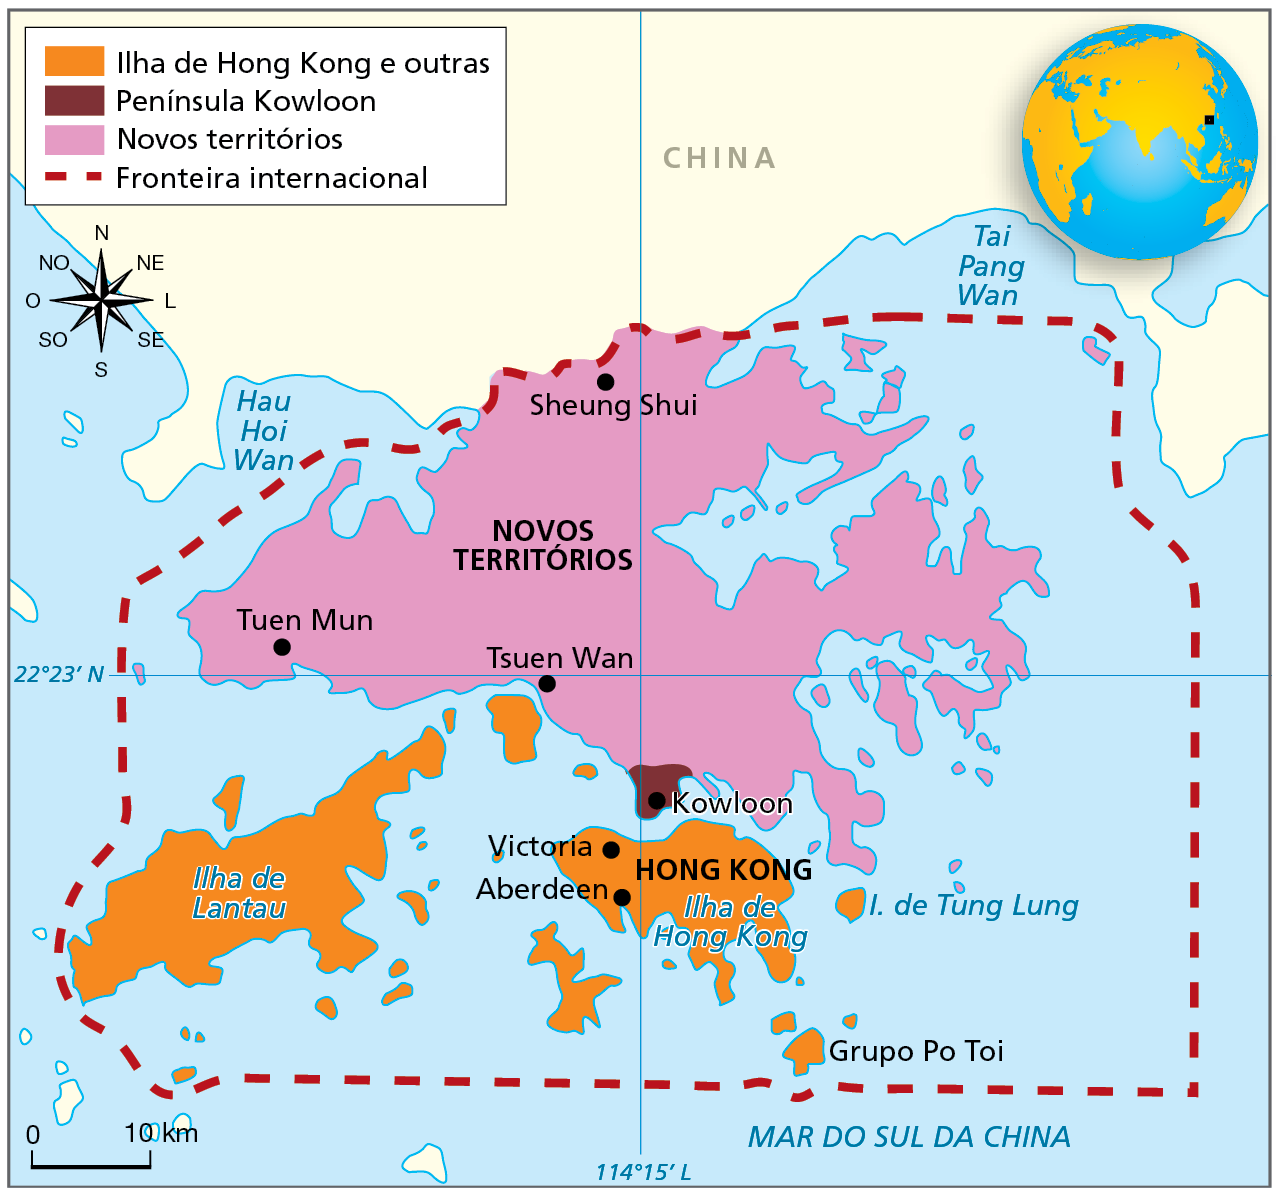 Mapa. Hong Kong - 2021. Mapa representando as porções de terras que constituem o território de Hong Kong.  
Ilha de Hong Kong e outras (na cor laranja): parte ao sul, abrangendo as ilhas de Lantau, Tung Lung e Hong Kong, com as principais cidades Victoria e Aberdeen. 
Península de Kowloon (na cor marrom): parte do território situada no extremo sul da porção continental.
Novos territórios (na cor rosa): porção continental do território, ao norte da Ilha de Hong Kong, atravessado pelo paralelo Norte (22 gaus e 23 minutos) e pelo meridiano Leste (114 graus e 15 minutos).  
Fronteira internacional: linha vermelha tracejada, contorna todo o território de Hong Kong abrangendo porções marítimas. 
Abaixo, rosa dos ventos e escala de 0 a 0 quilômetros.